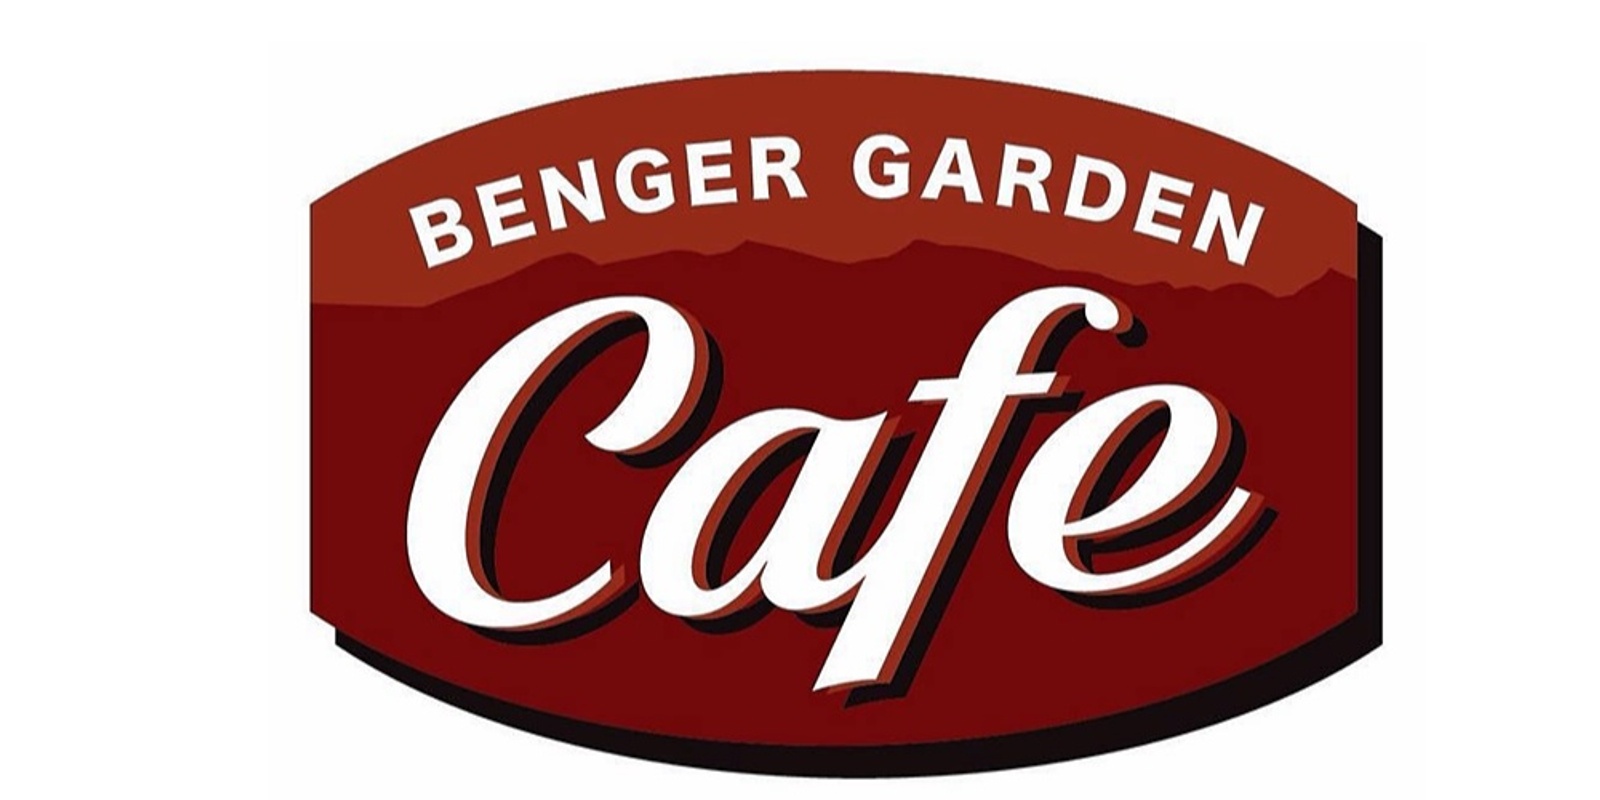 Benger Garden Café